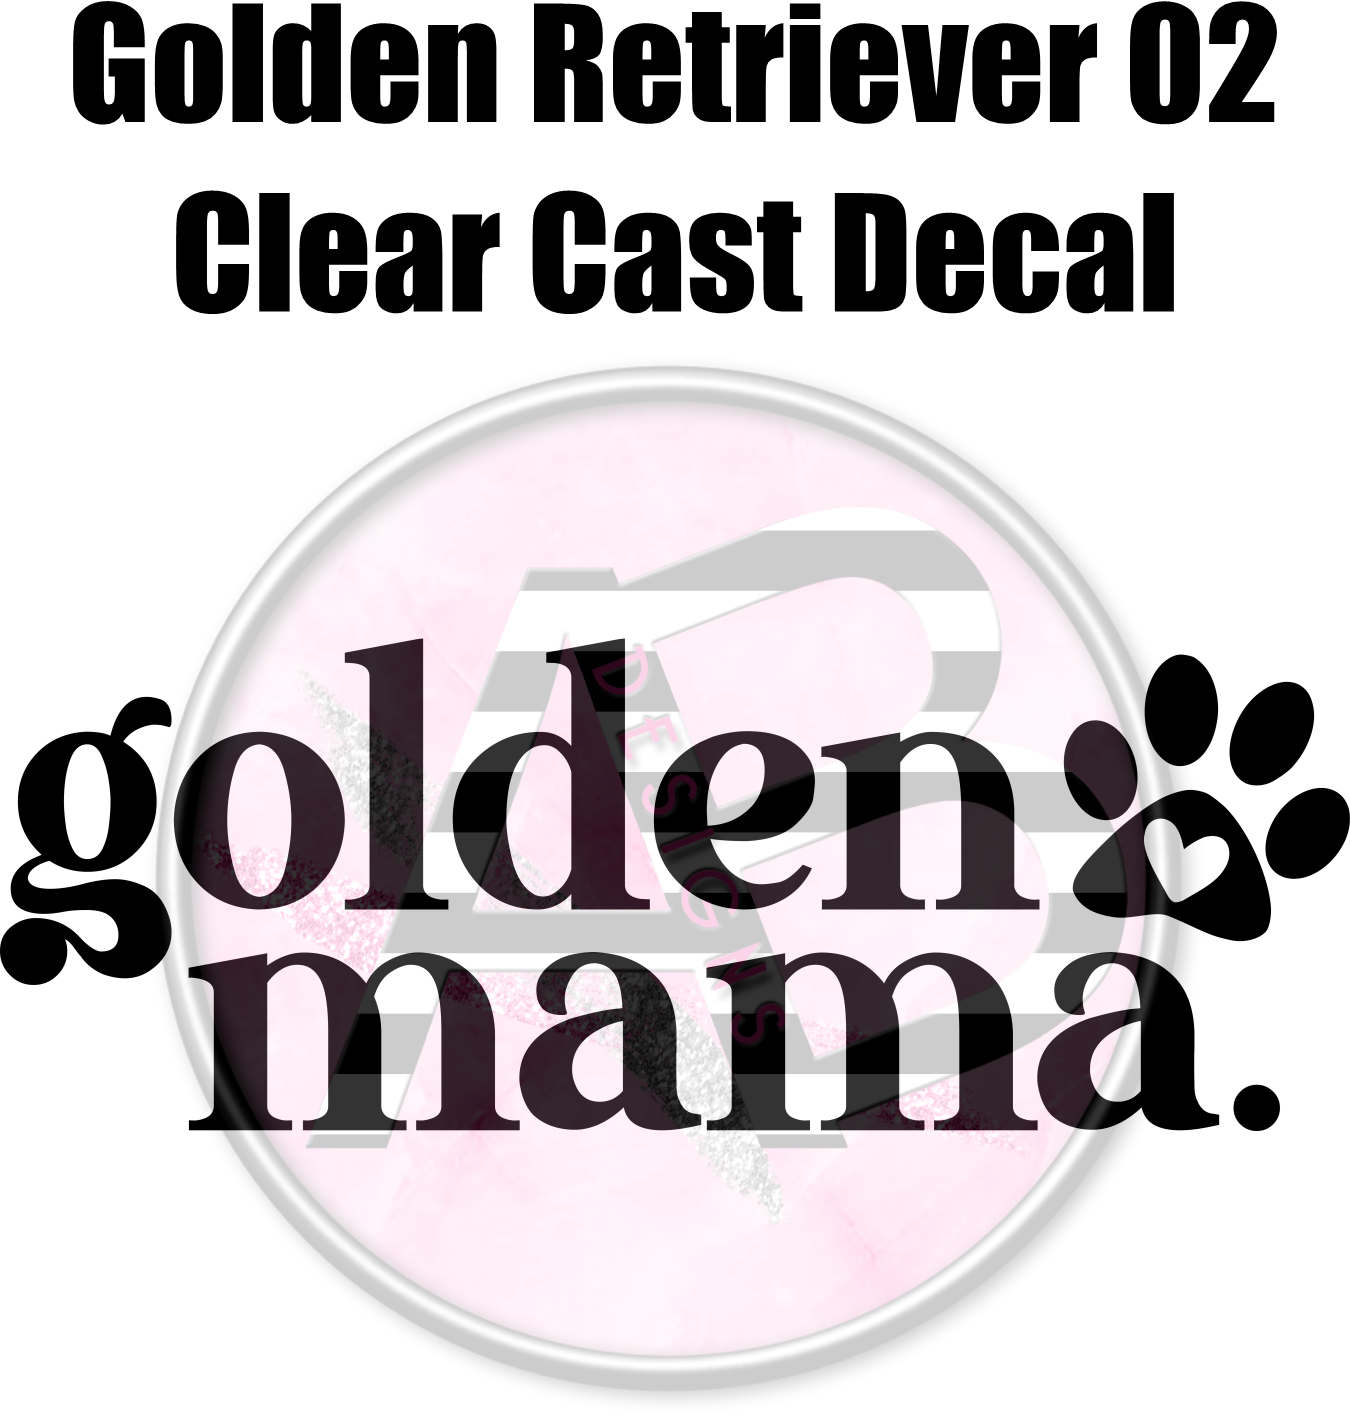 Golden Retriever 02 - Clear Cast Decal